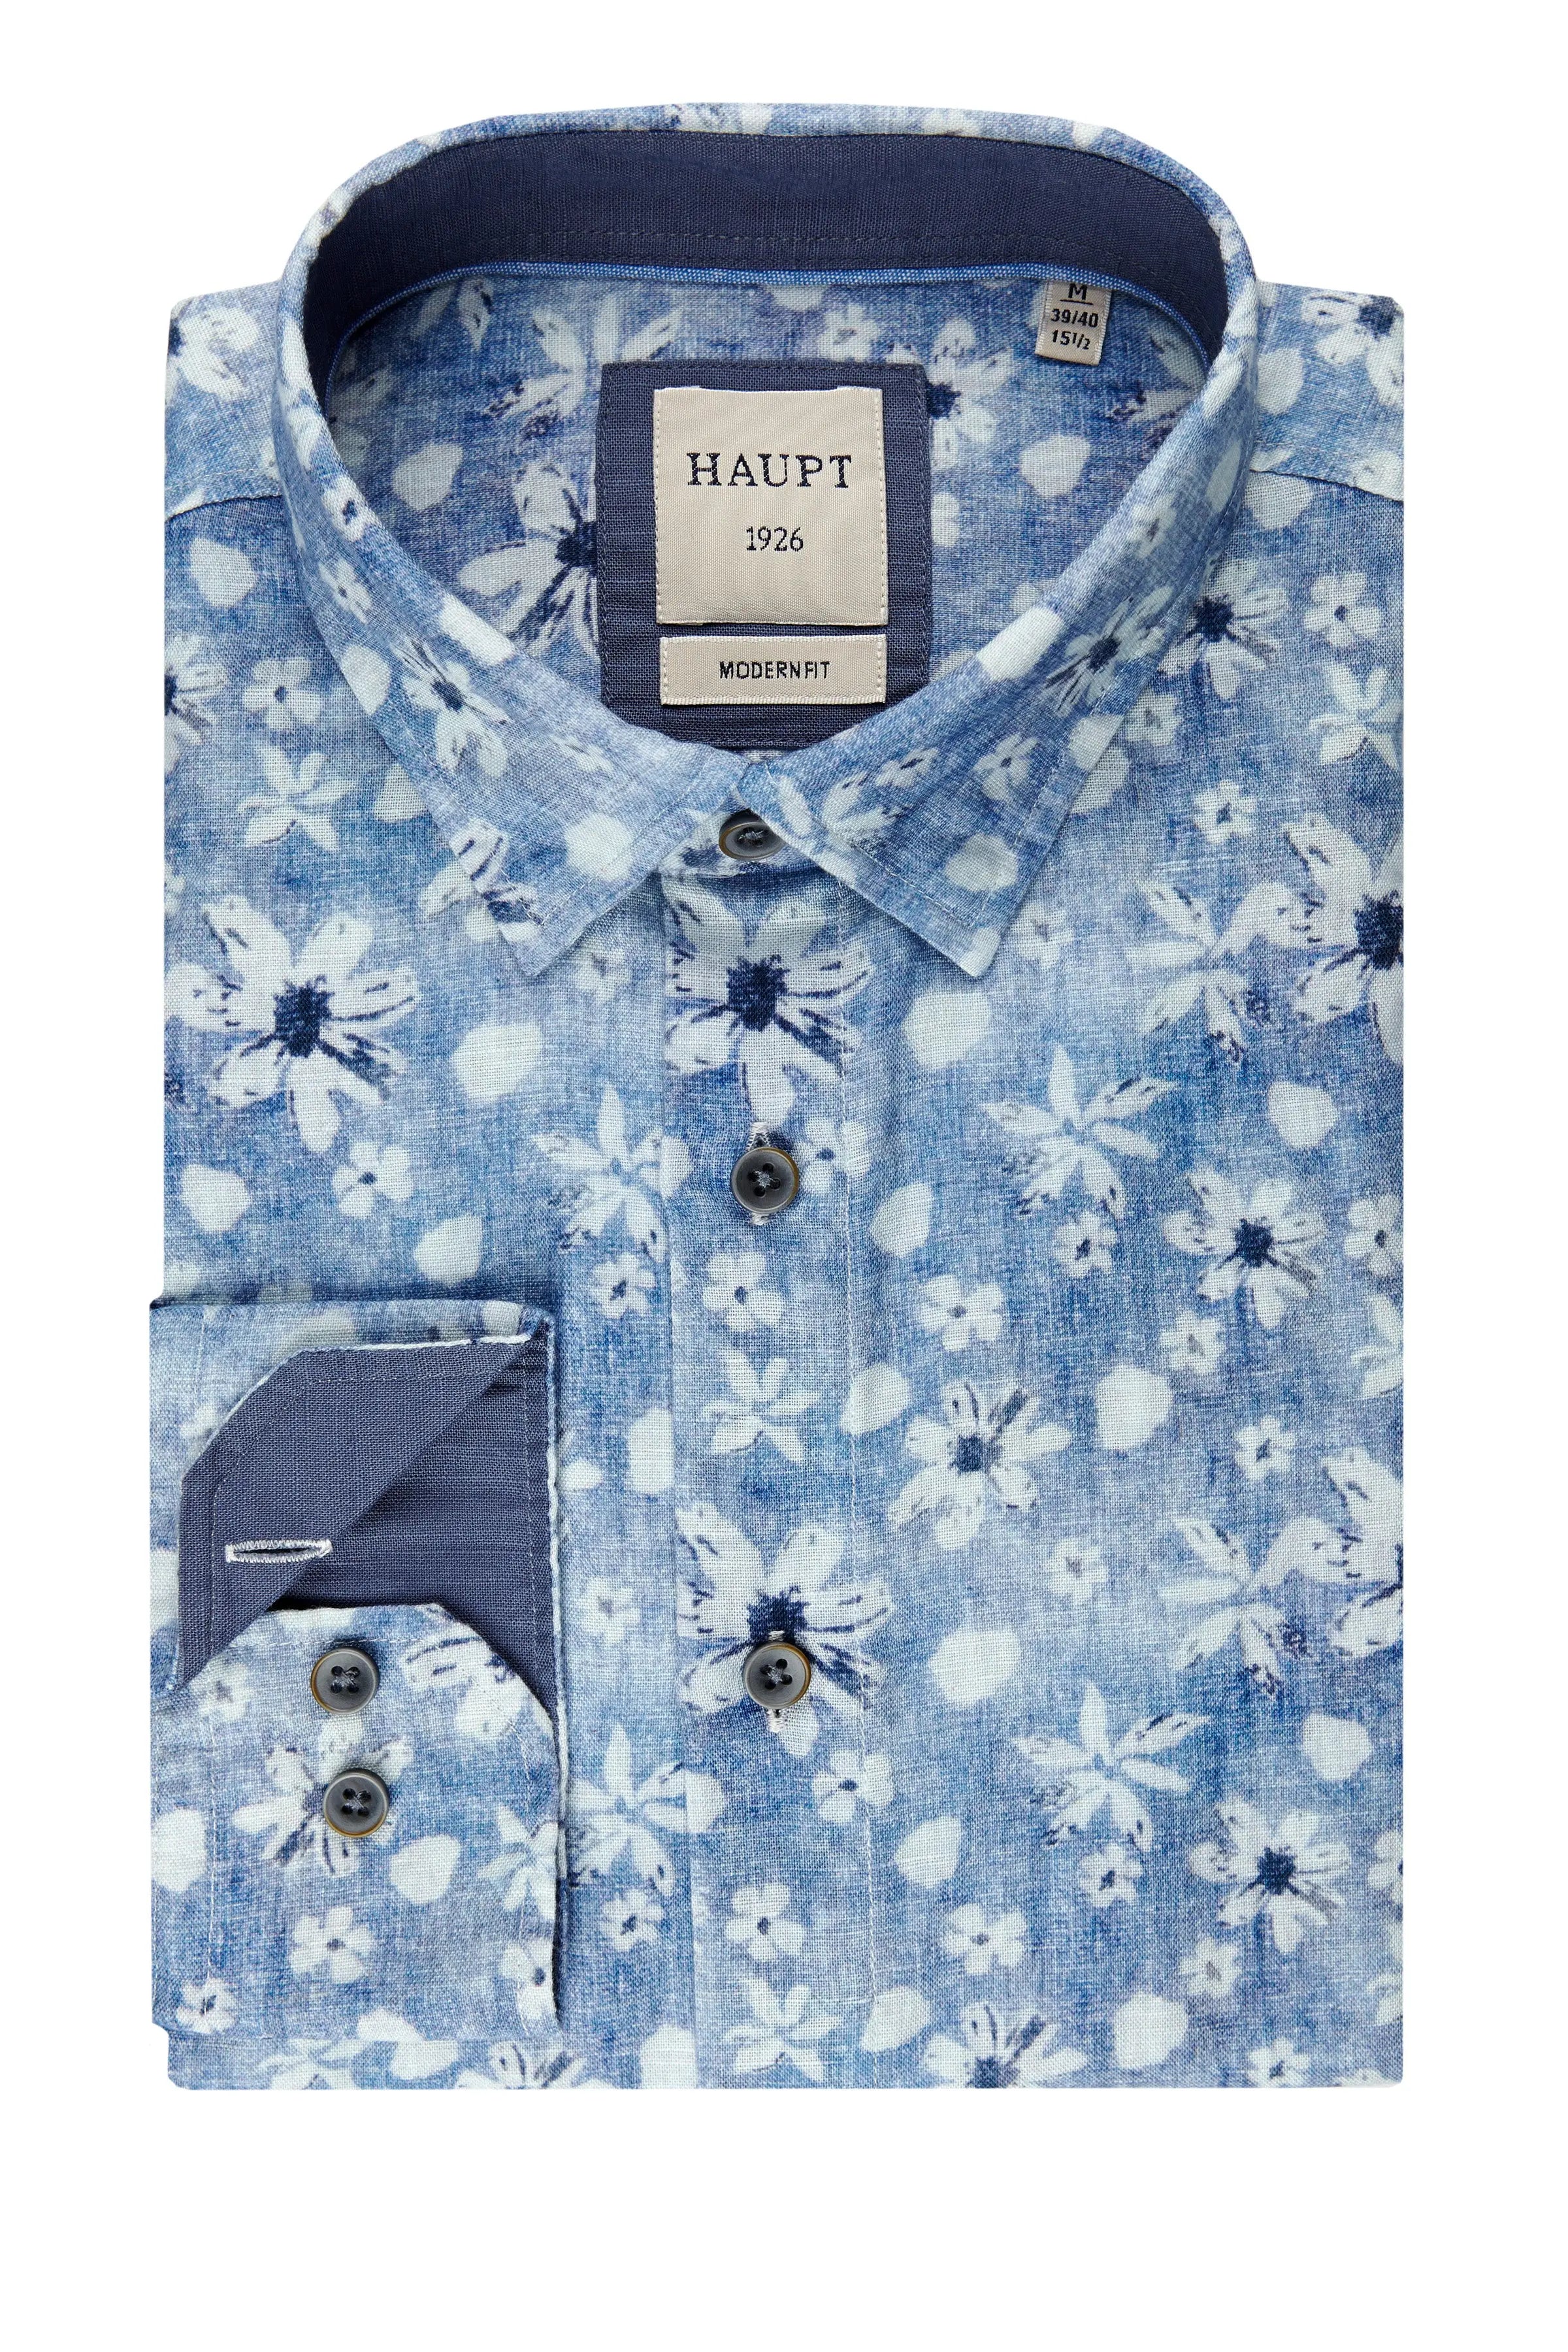 Herrenhemd light blue print Haupt